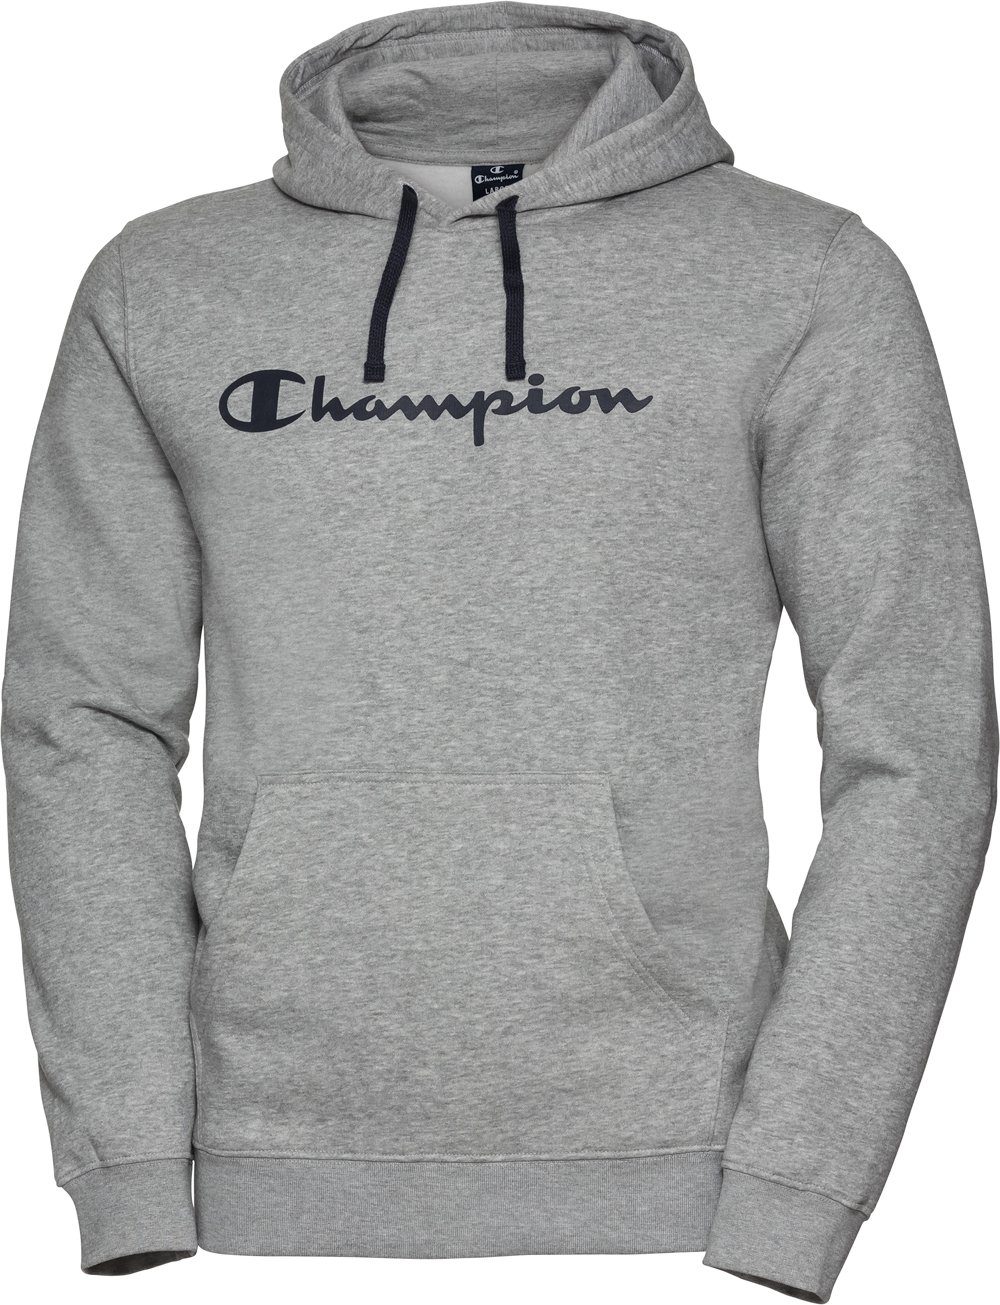 Champion Kapuzensweatshirt für Damen und Herren marine